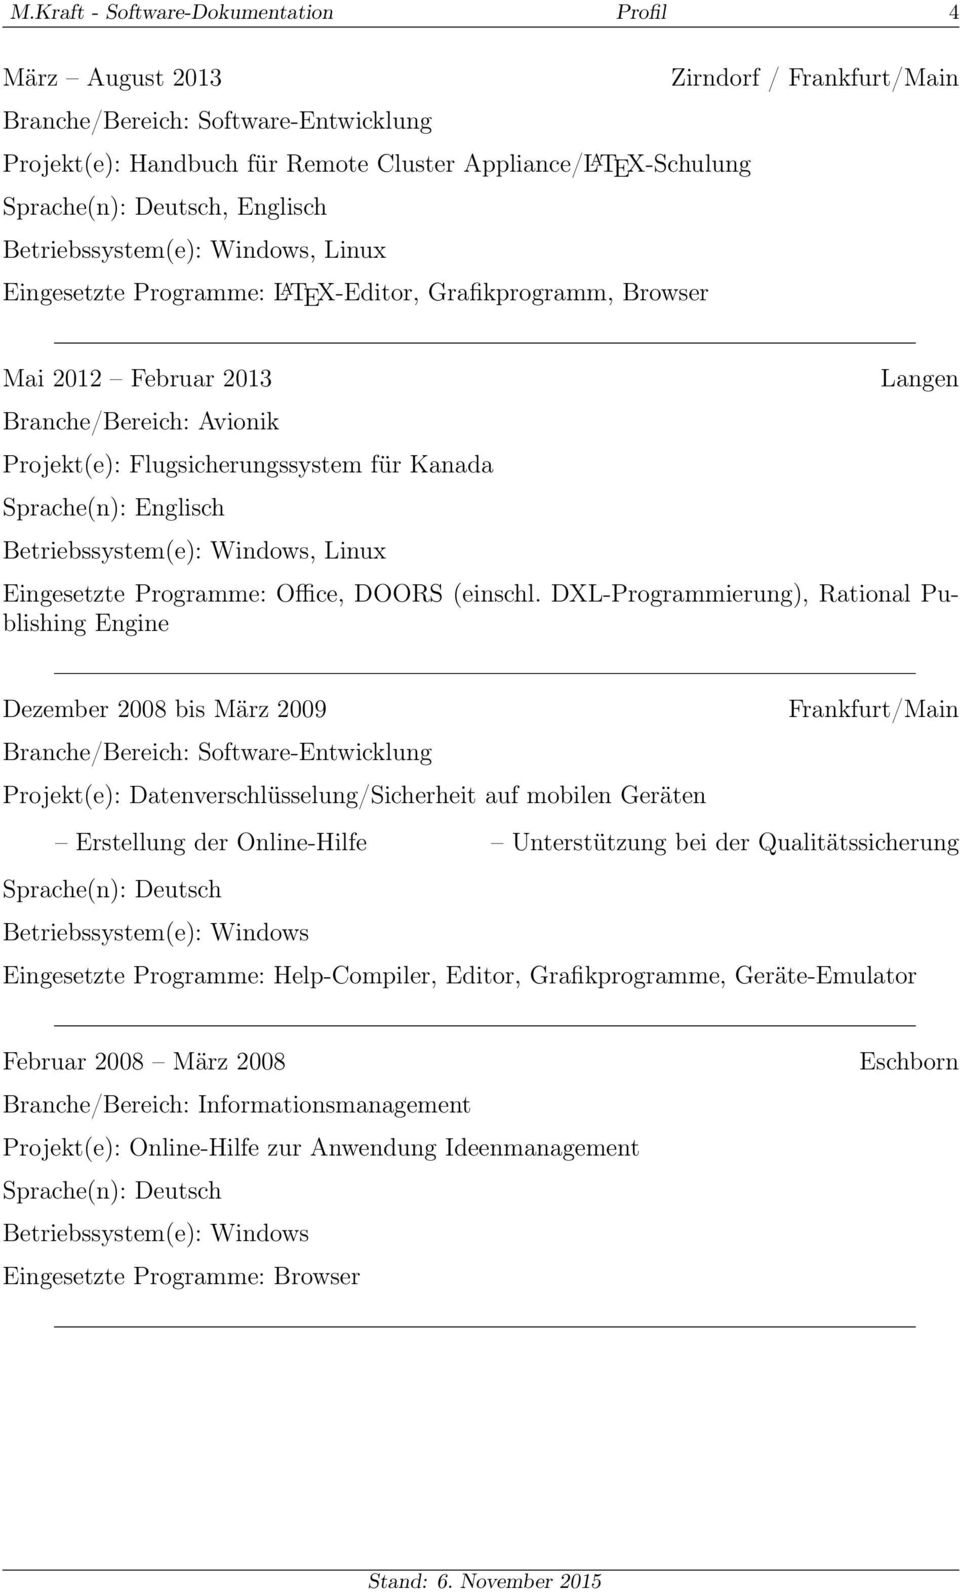 DXL-Programmierung), Rational Publishing Engine Dezember 2008 bis März 2009 Projekt(e): Datenverschlüsselung/Sicherheit auf mobilen Geräten Erstellung der Online-Hilfe Unterstützung bei der